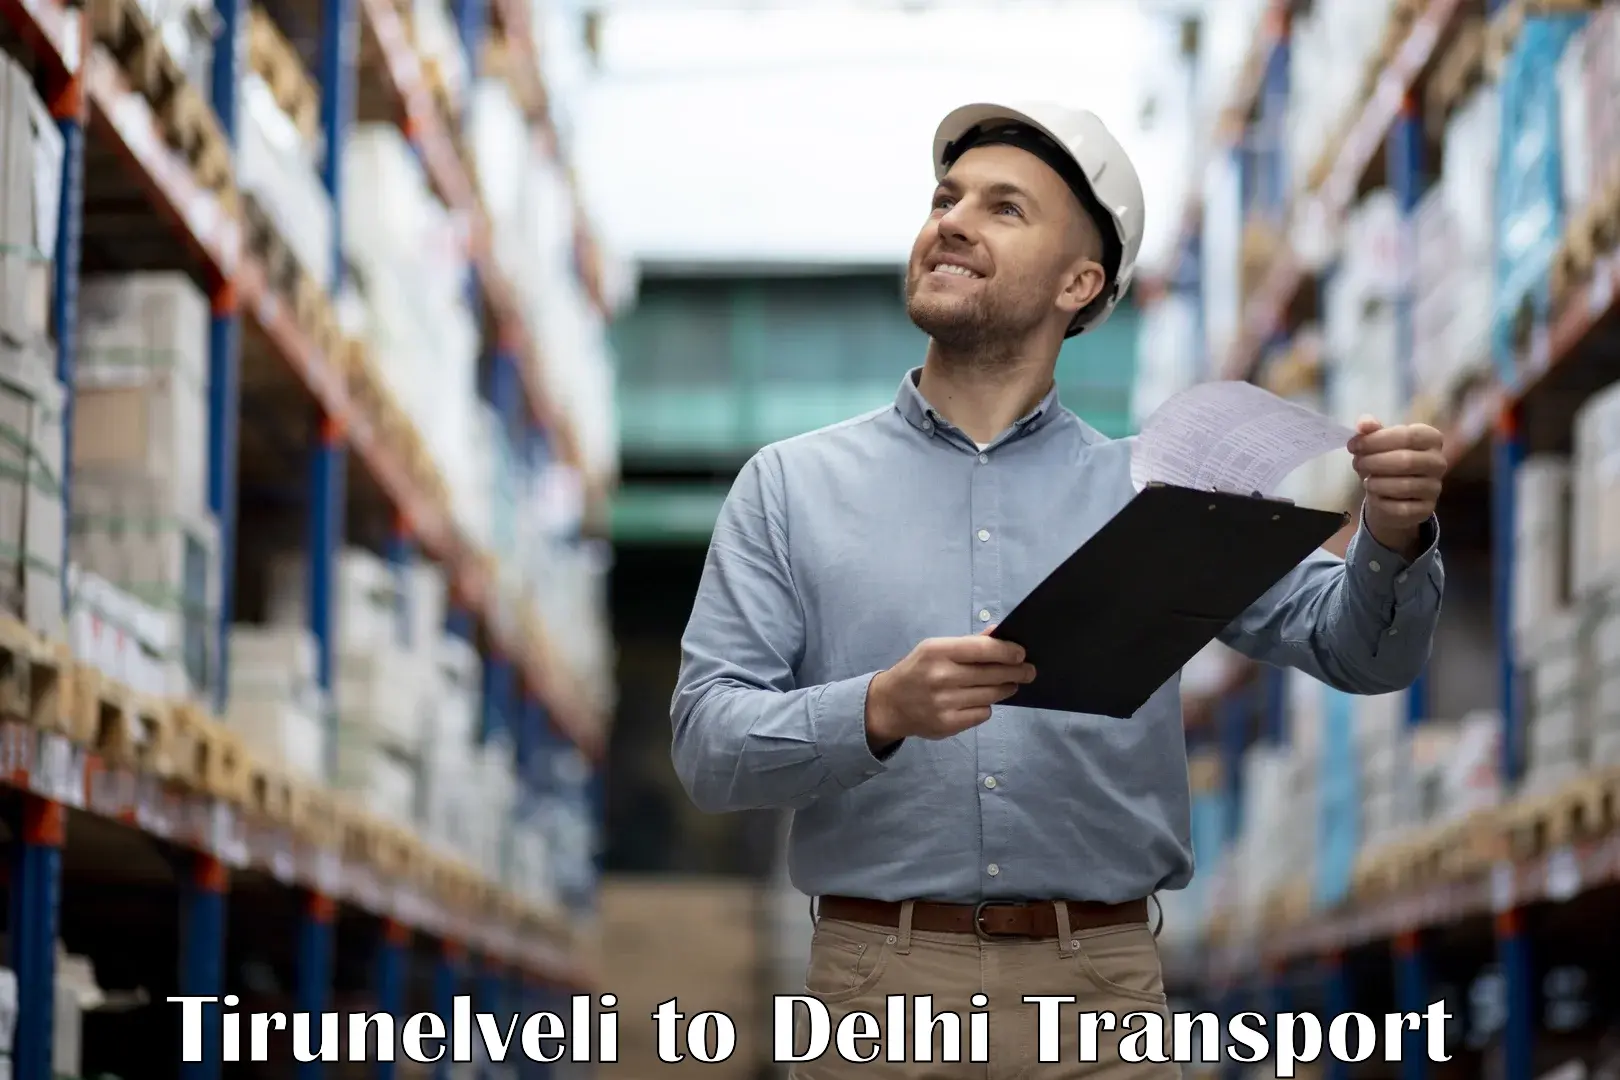 Online transport service Tirunelveli to IIT Delhi